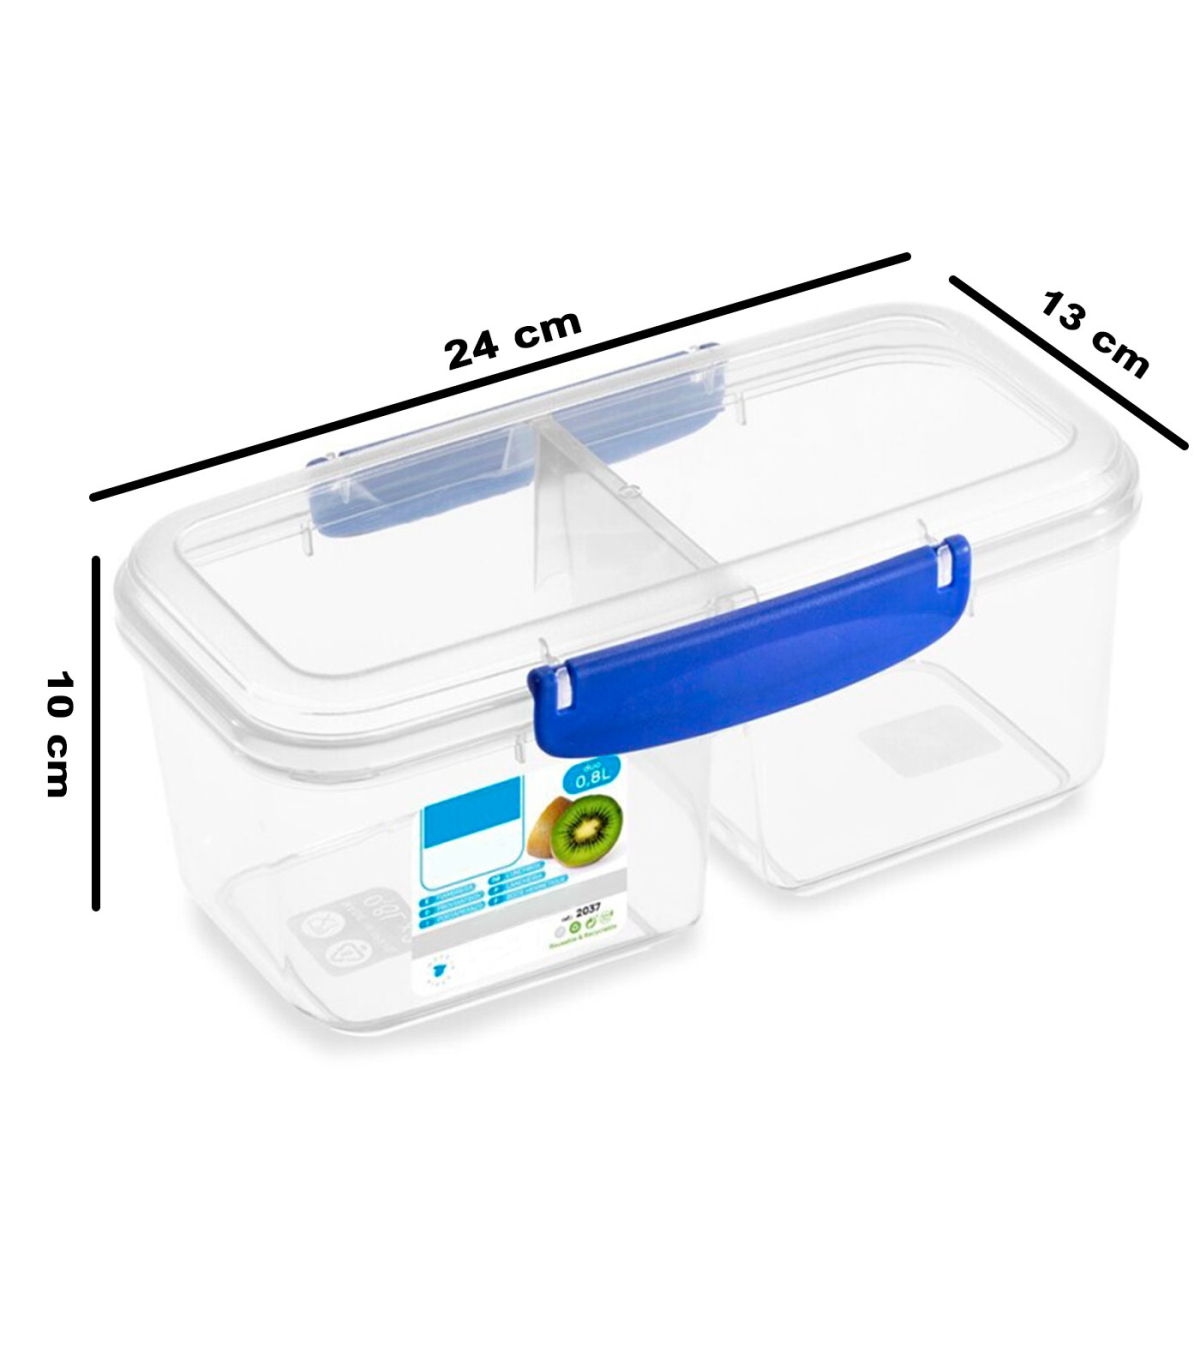 Tradineur - Set de 2 botes reutilizables de plástico, tapa de